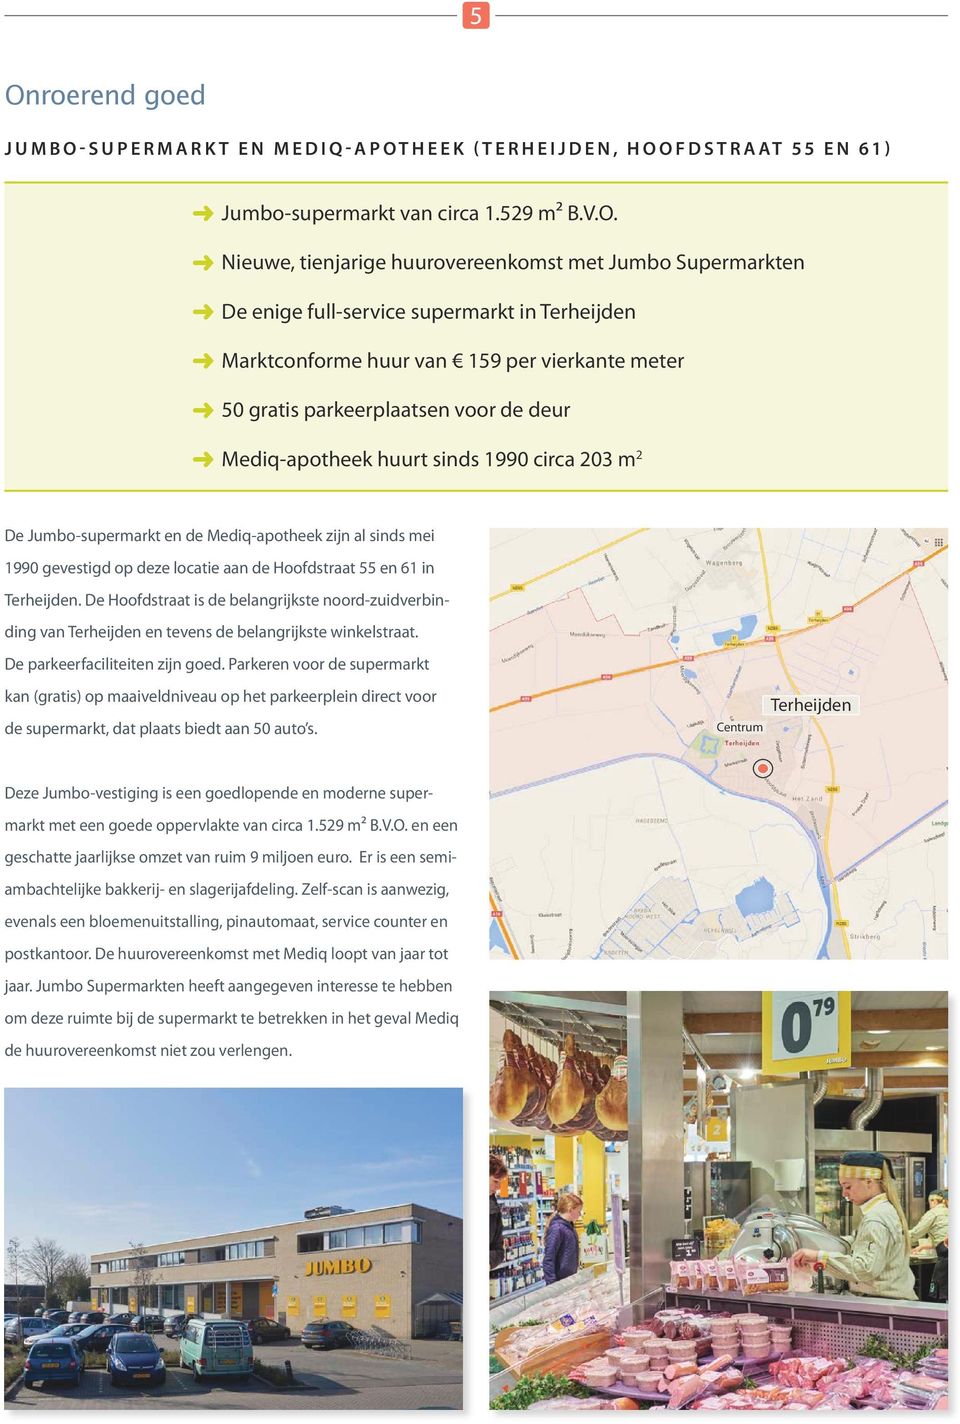 Mediq-apotheek zijn al sinds mei 1990 gevestigd op deze locatie aan de Hoofdstraat 55 en 61 in Terheijden.